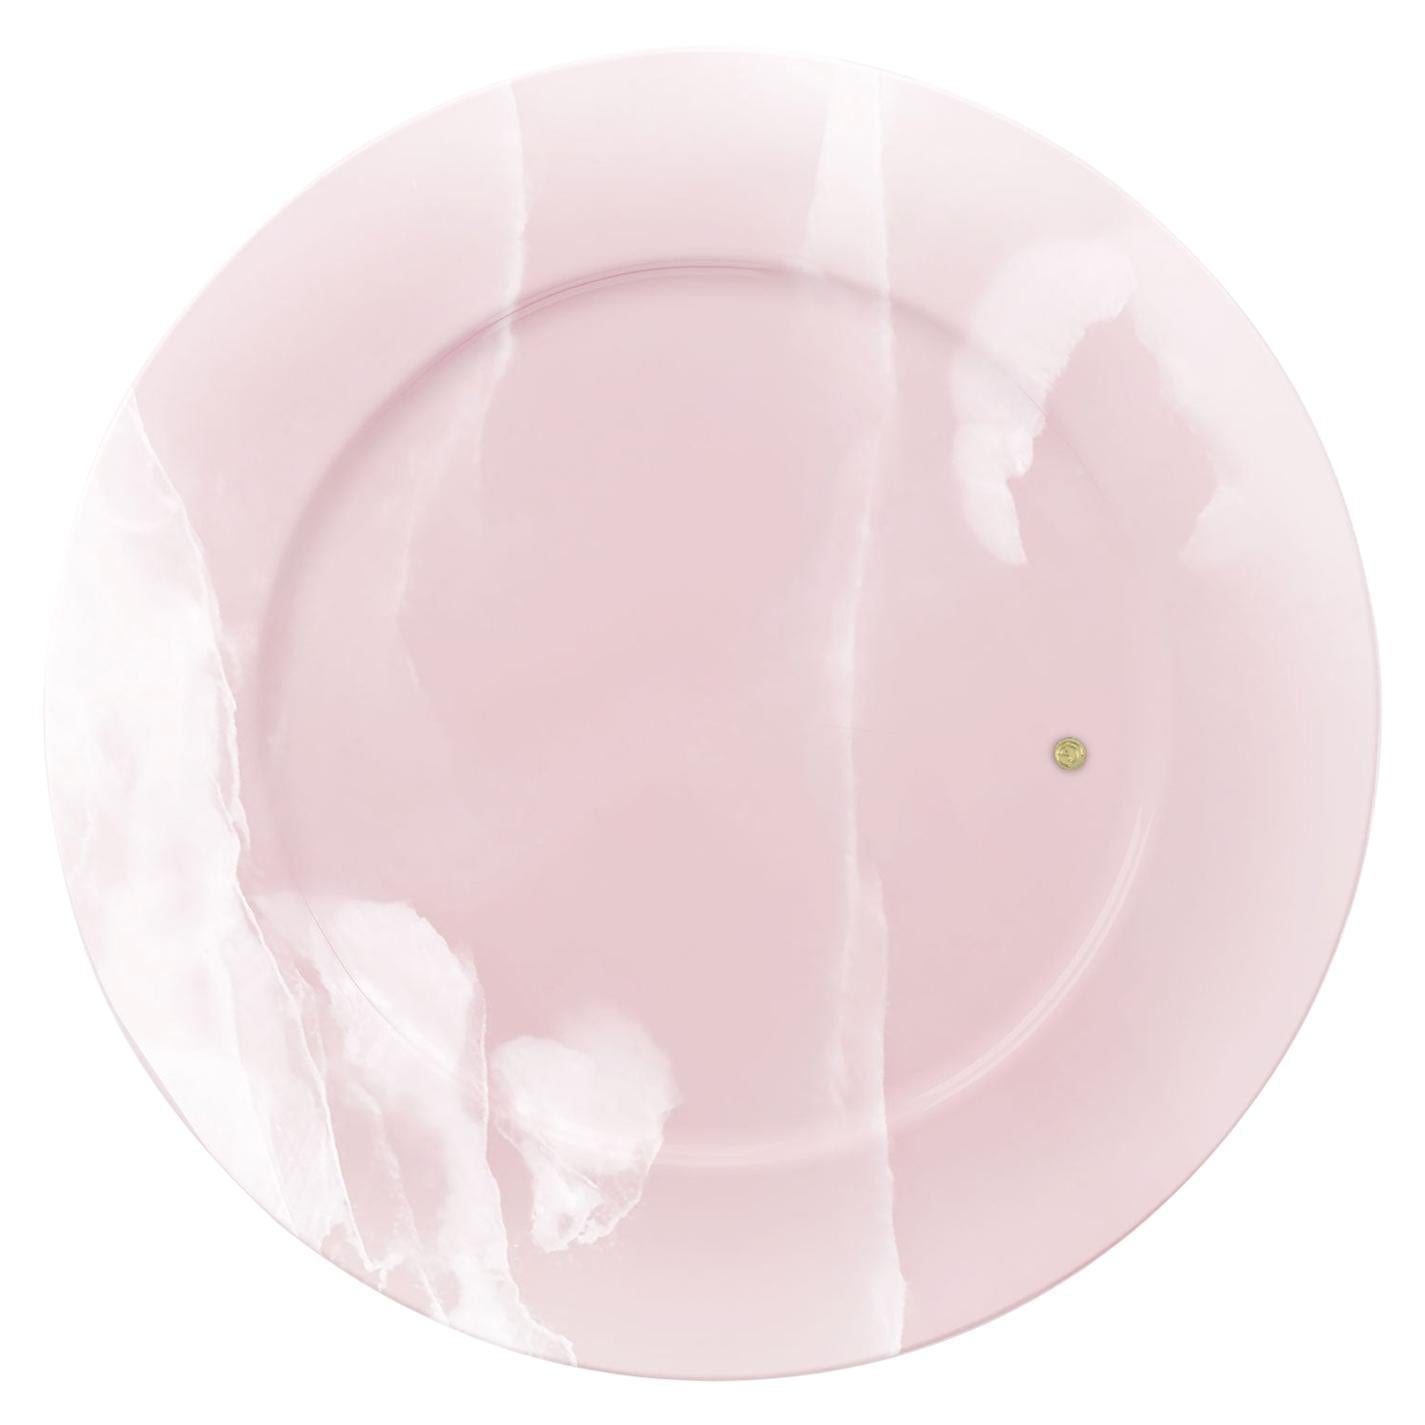 Ensemble de 4 assiettes de service en marbre onyx rose, fabriquées à la main et de collection